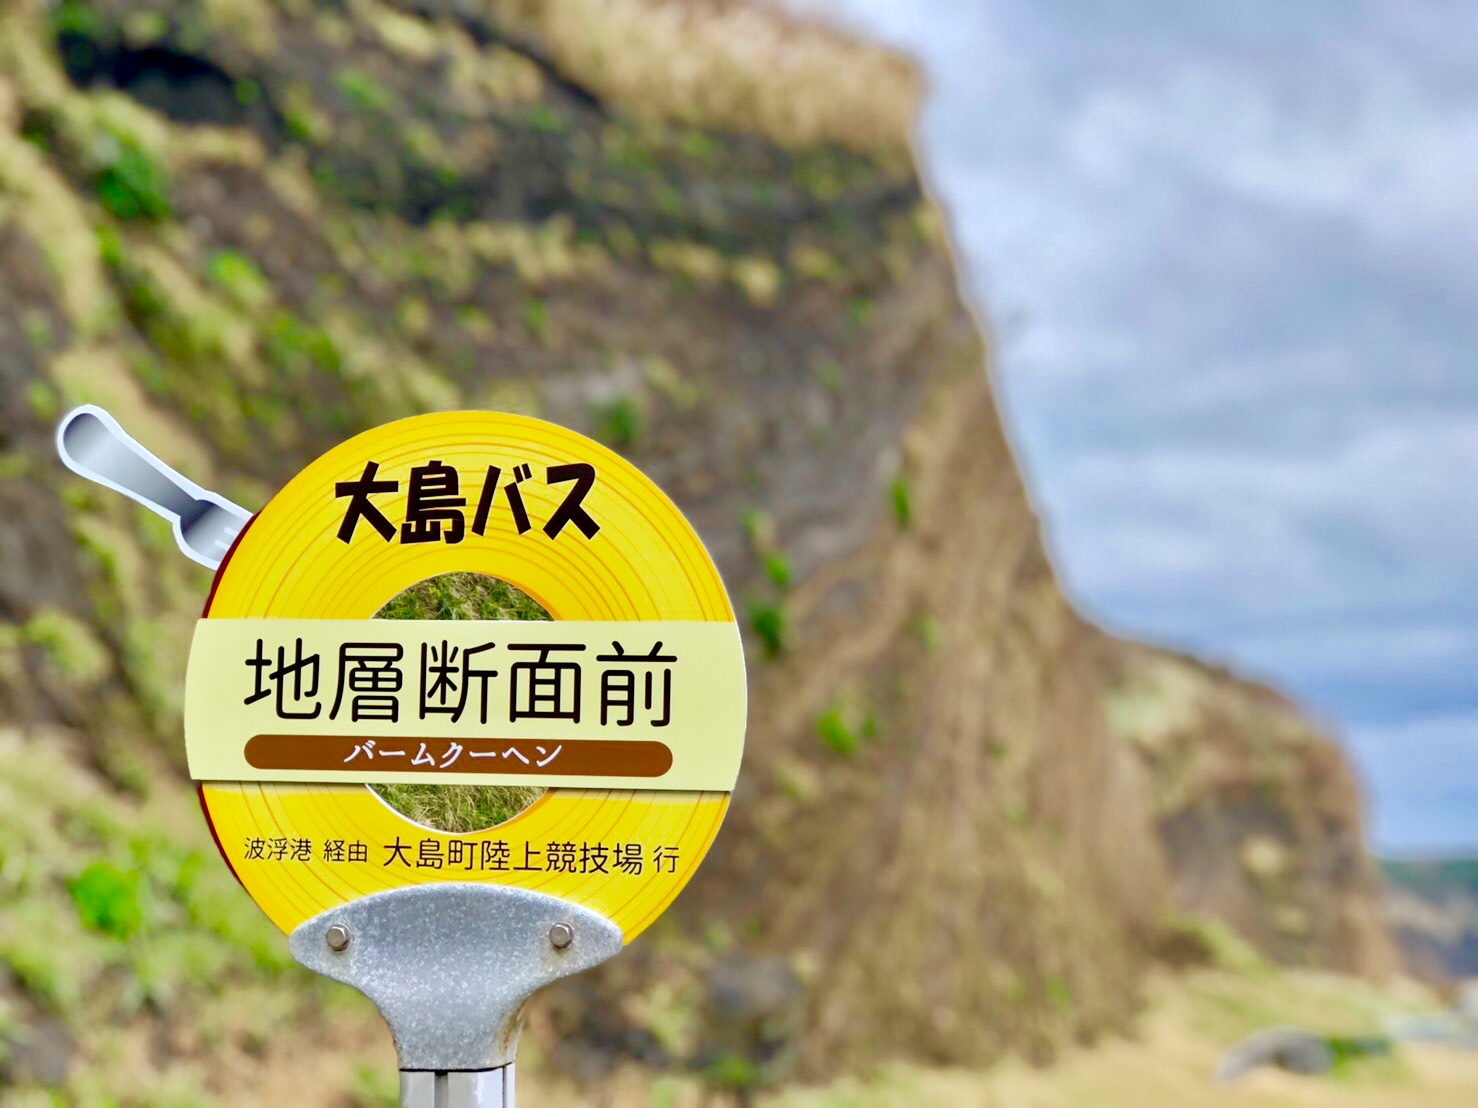 伊豆大島の地層大切断面前にスイーツバス停登場 東海汽船株式会社のプレスリリース